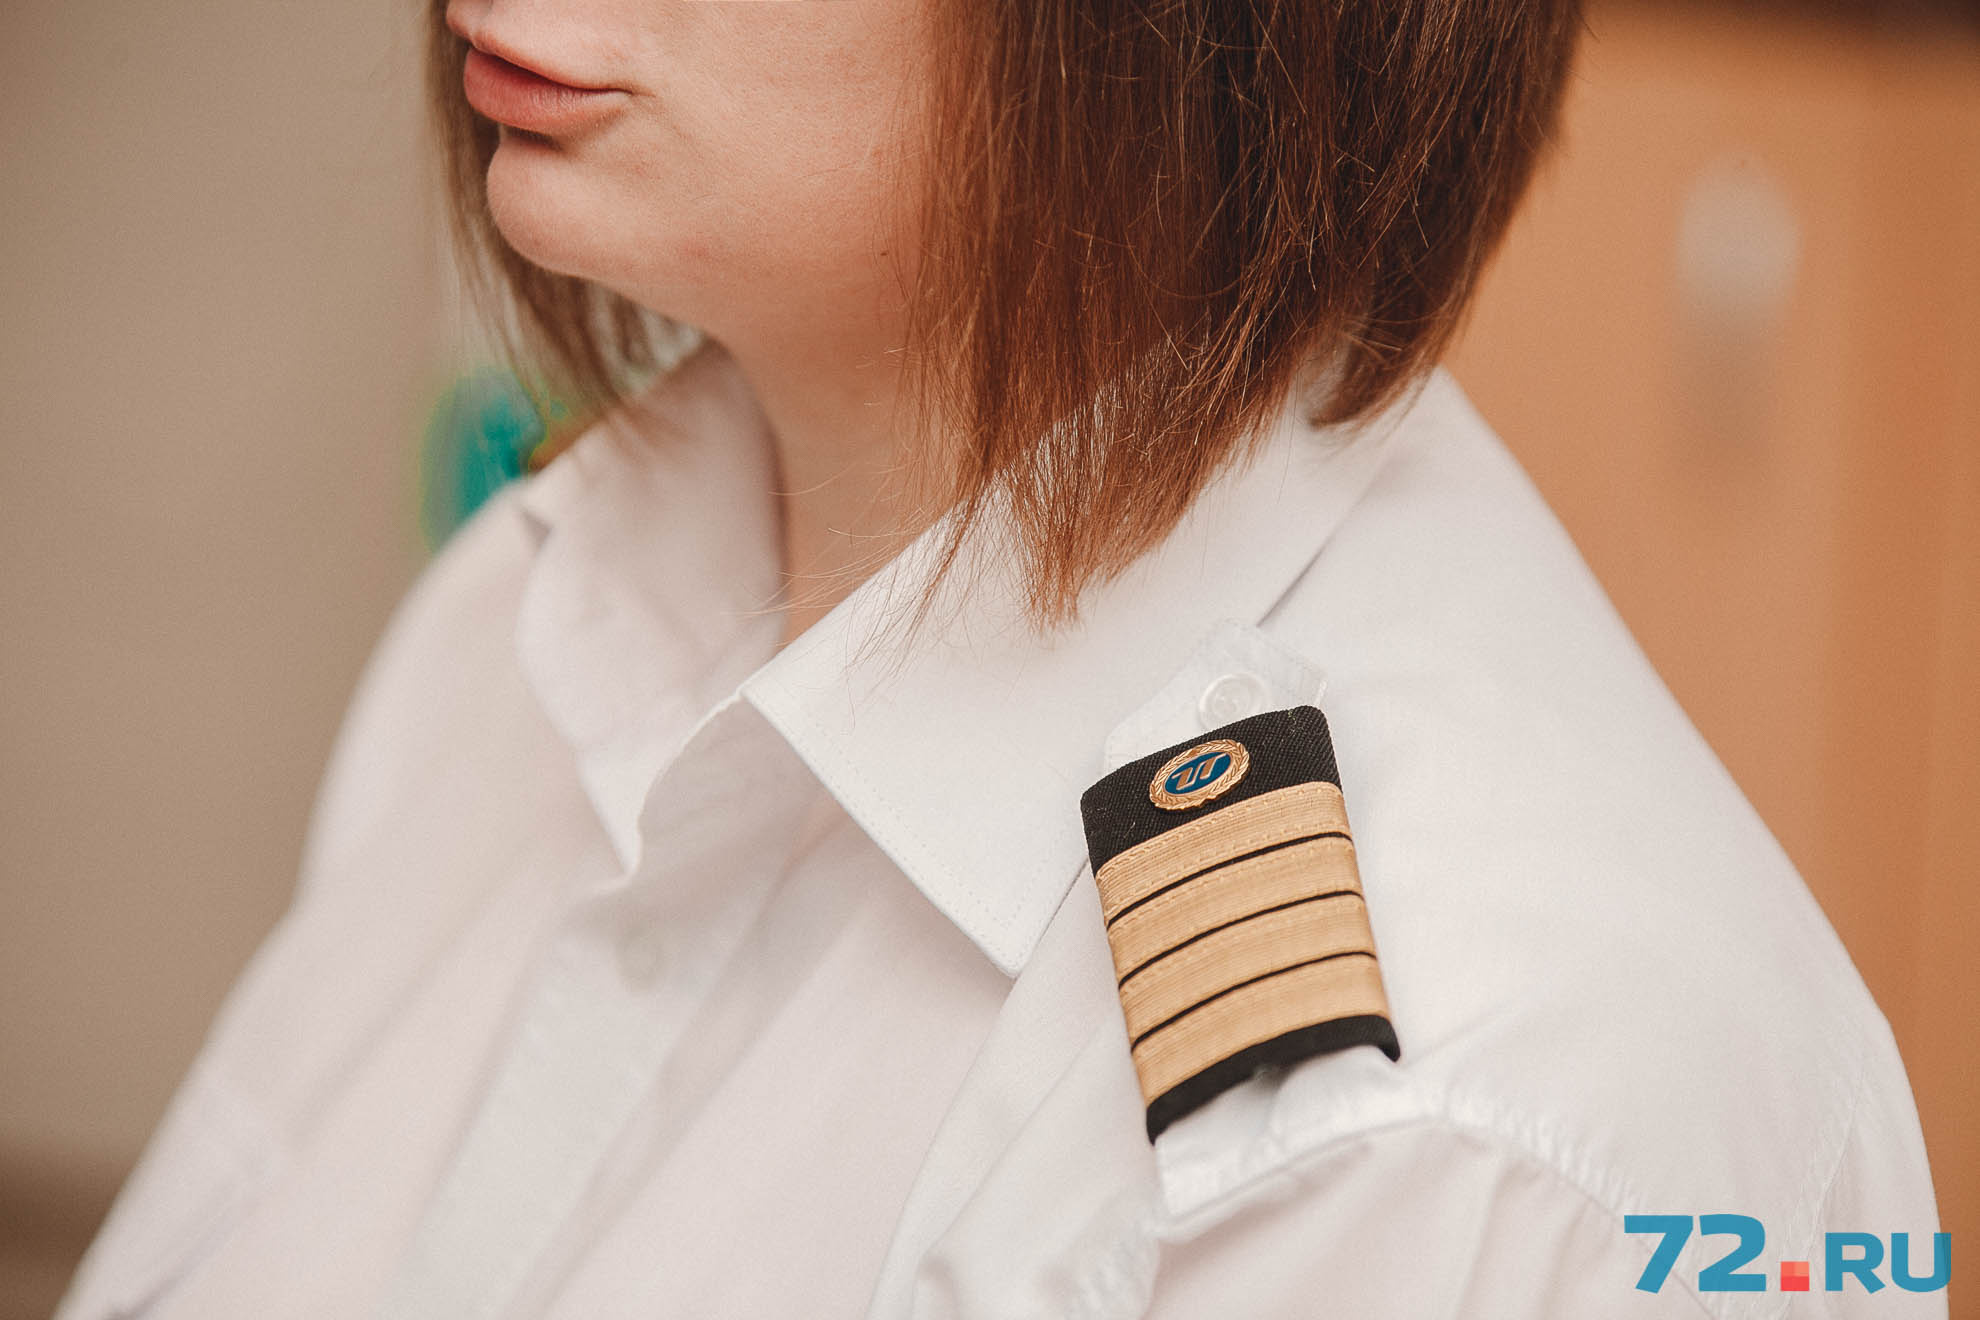 Виктория из Тюмени впервые в истории компании UTair стала женщиной-командиром магистрального самолёта